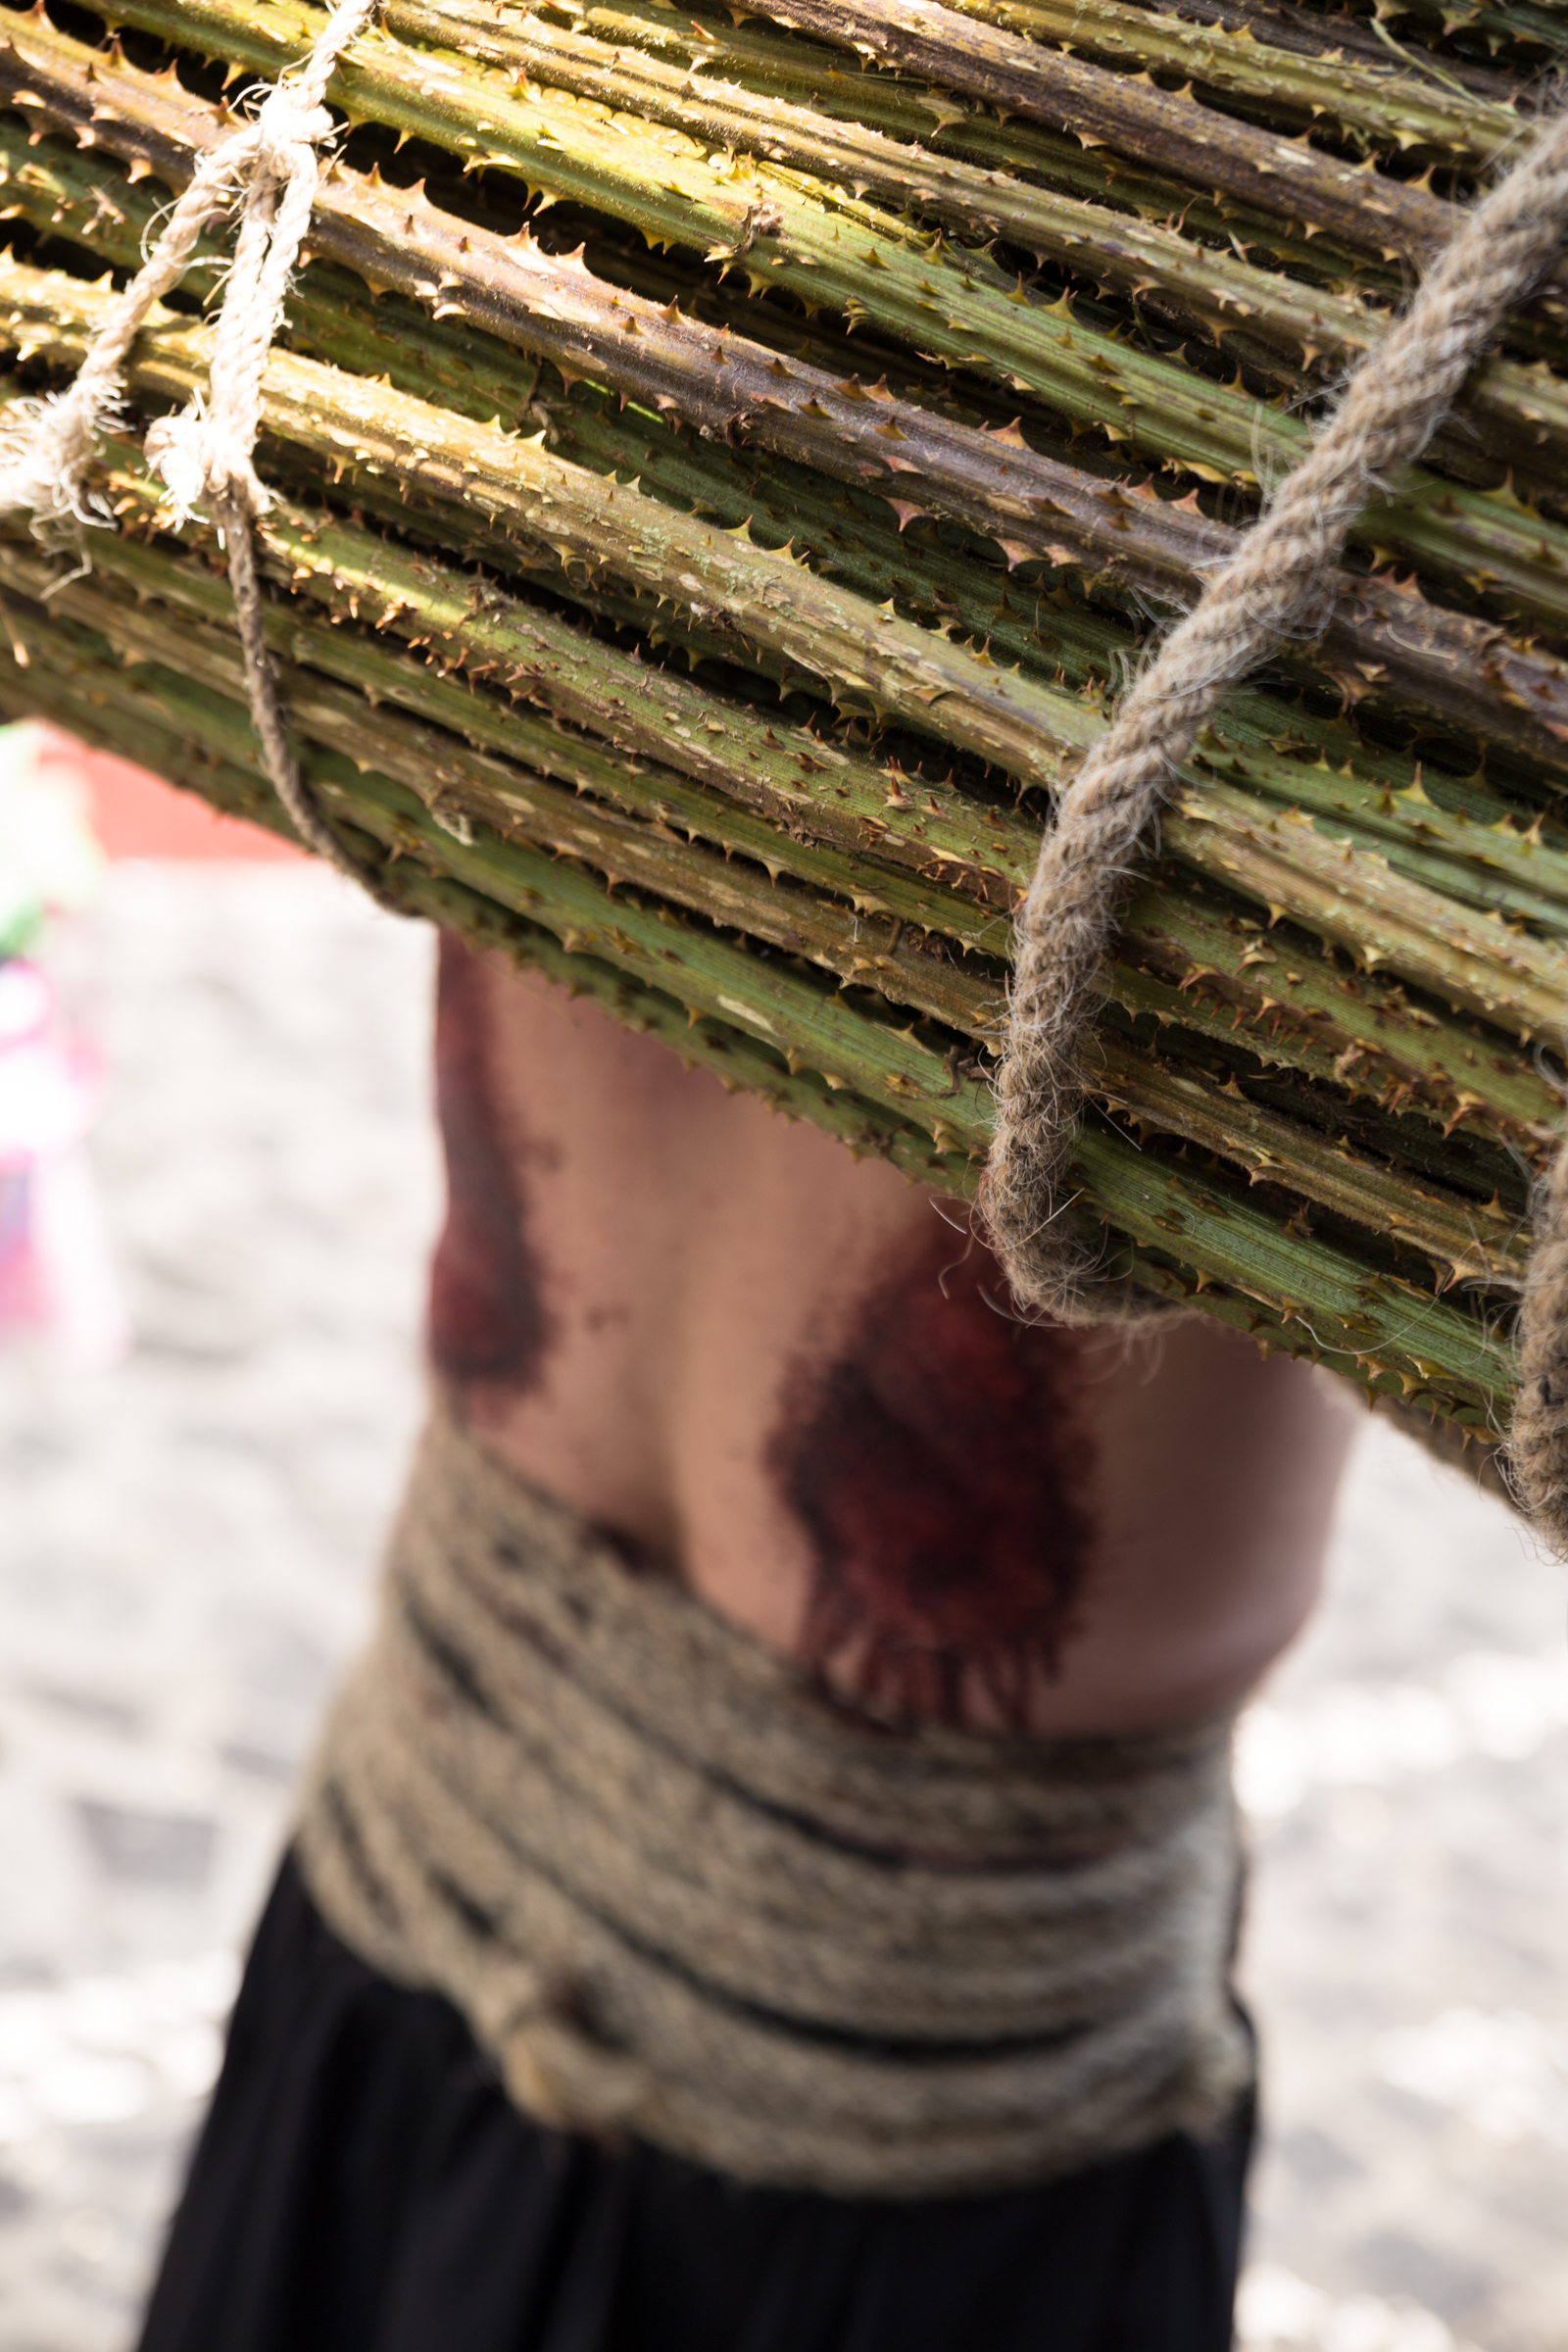   Espinas, cadenas, flagelaciones y sangre son las señas de identidad de la Semana Santa de Taxco, una tradición colonial que se remonta a 1598, donde la culpa y la expiación son llevadas al extremo  